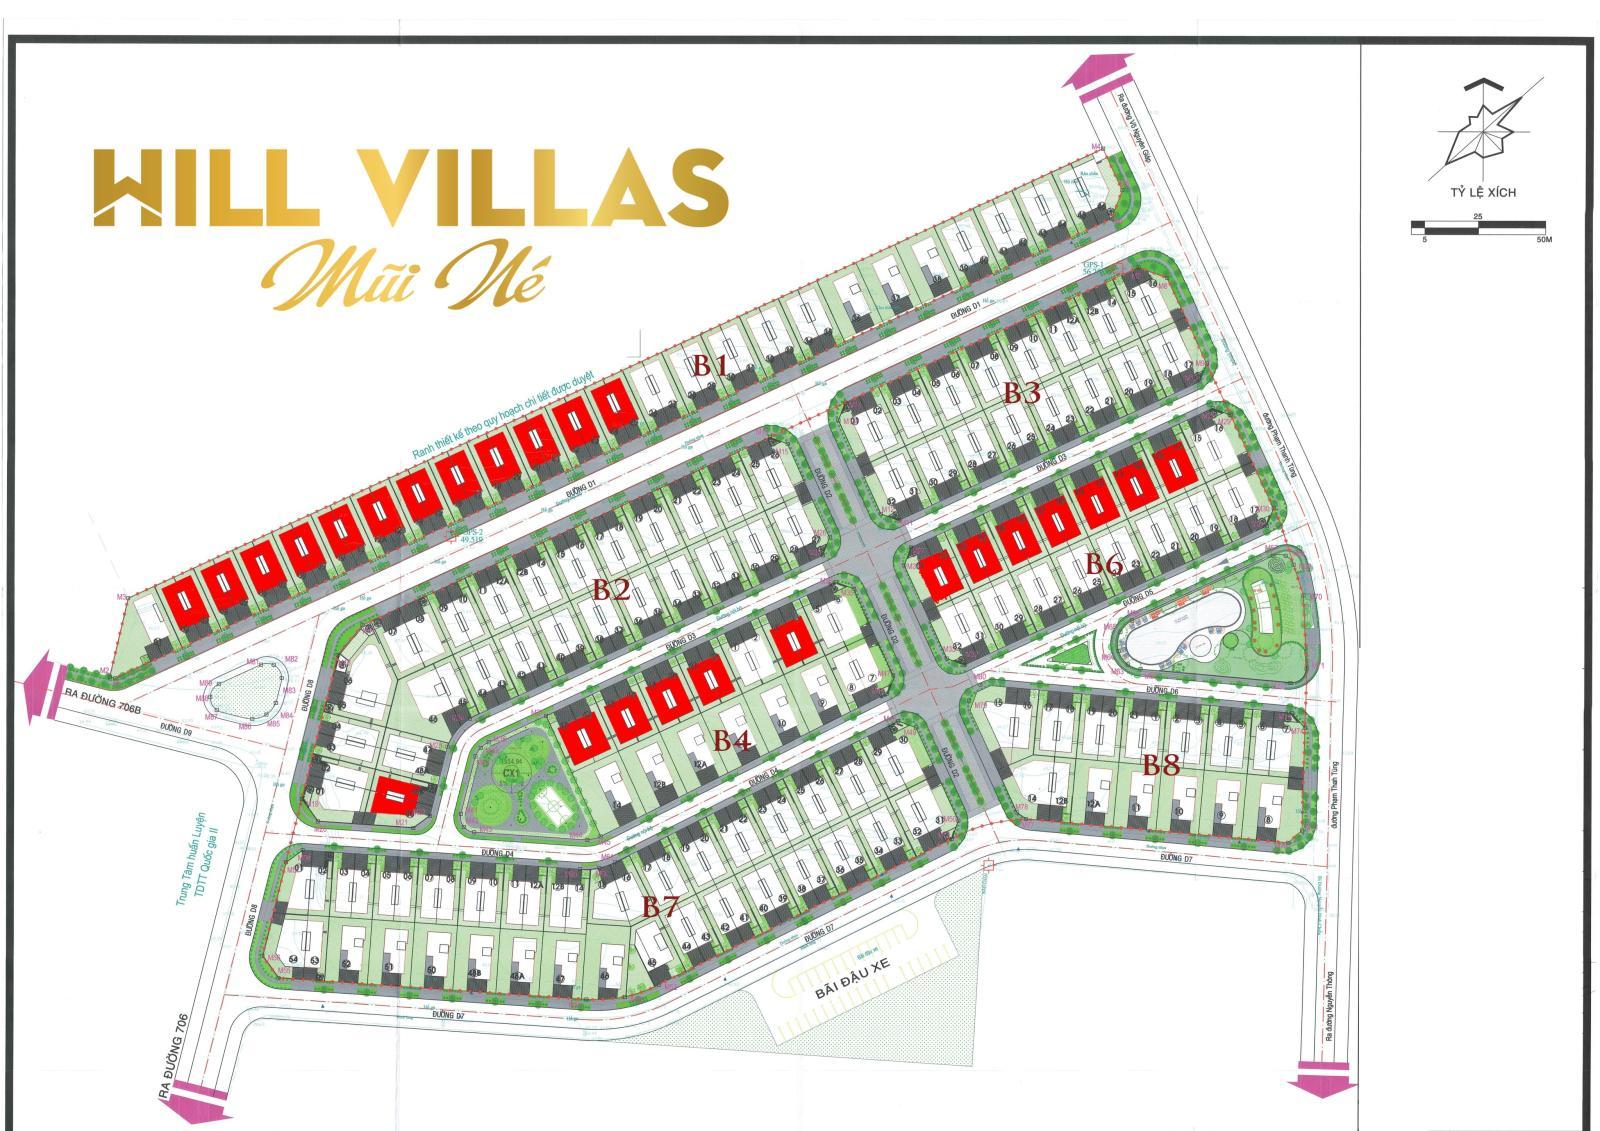 Khu biệt thự Hill Villas